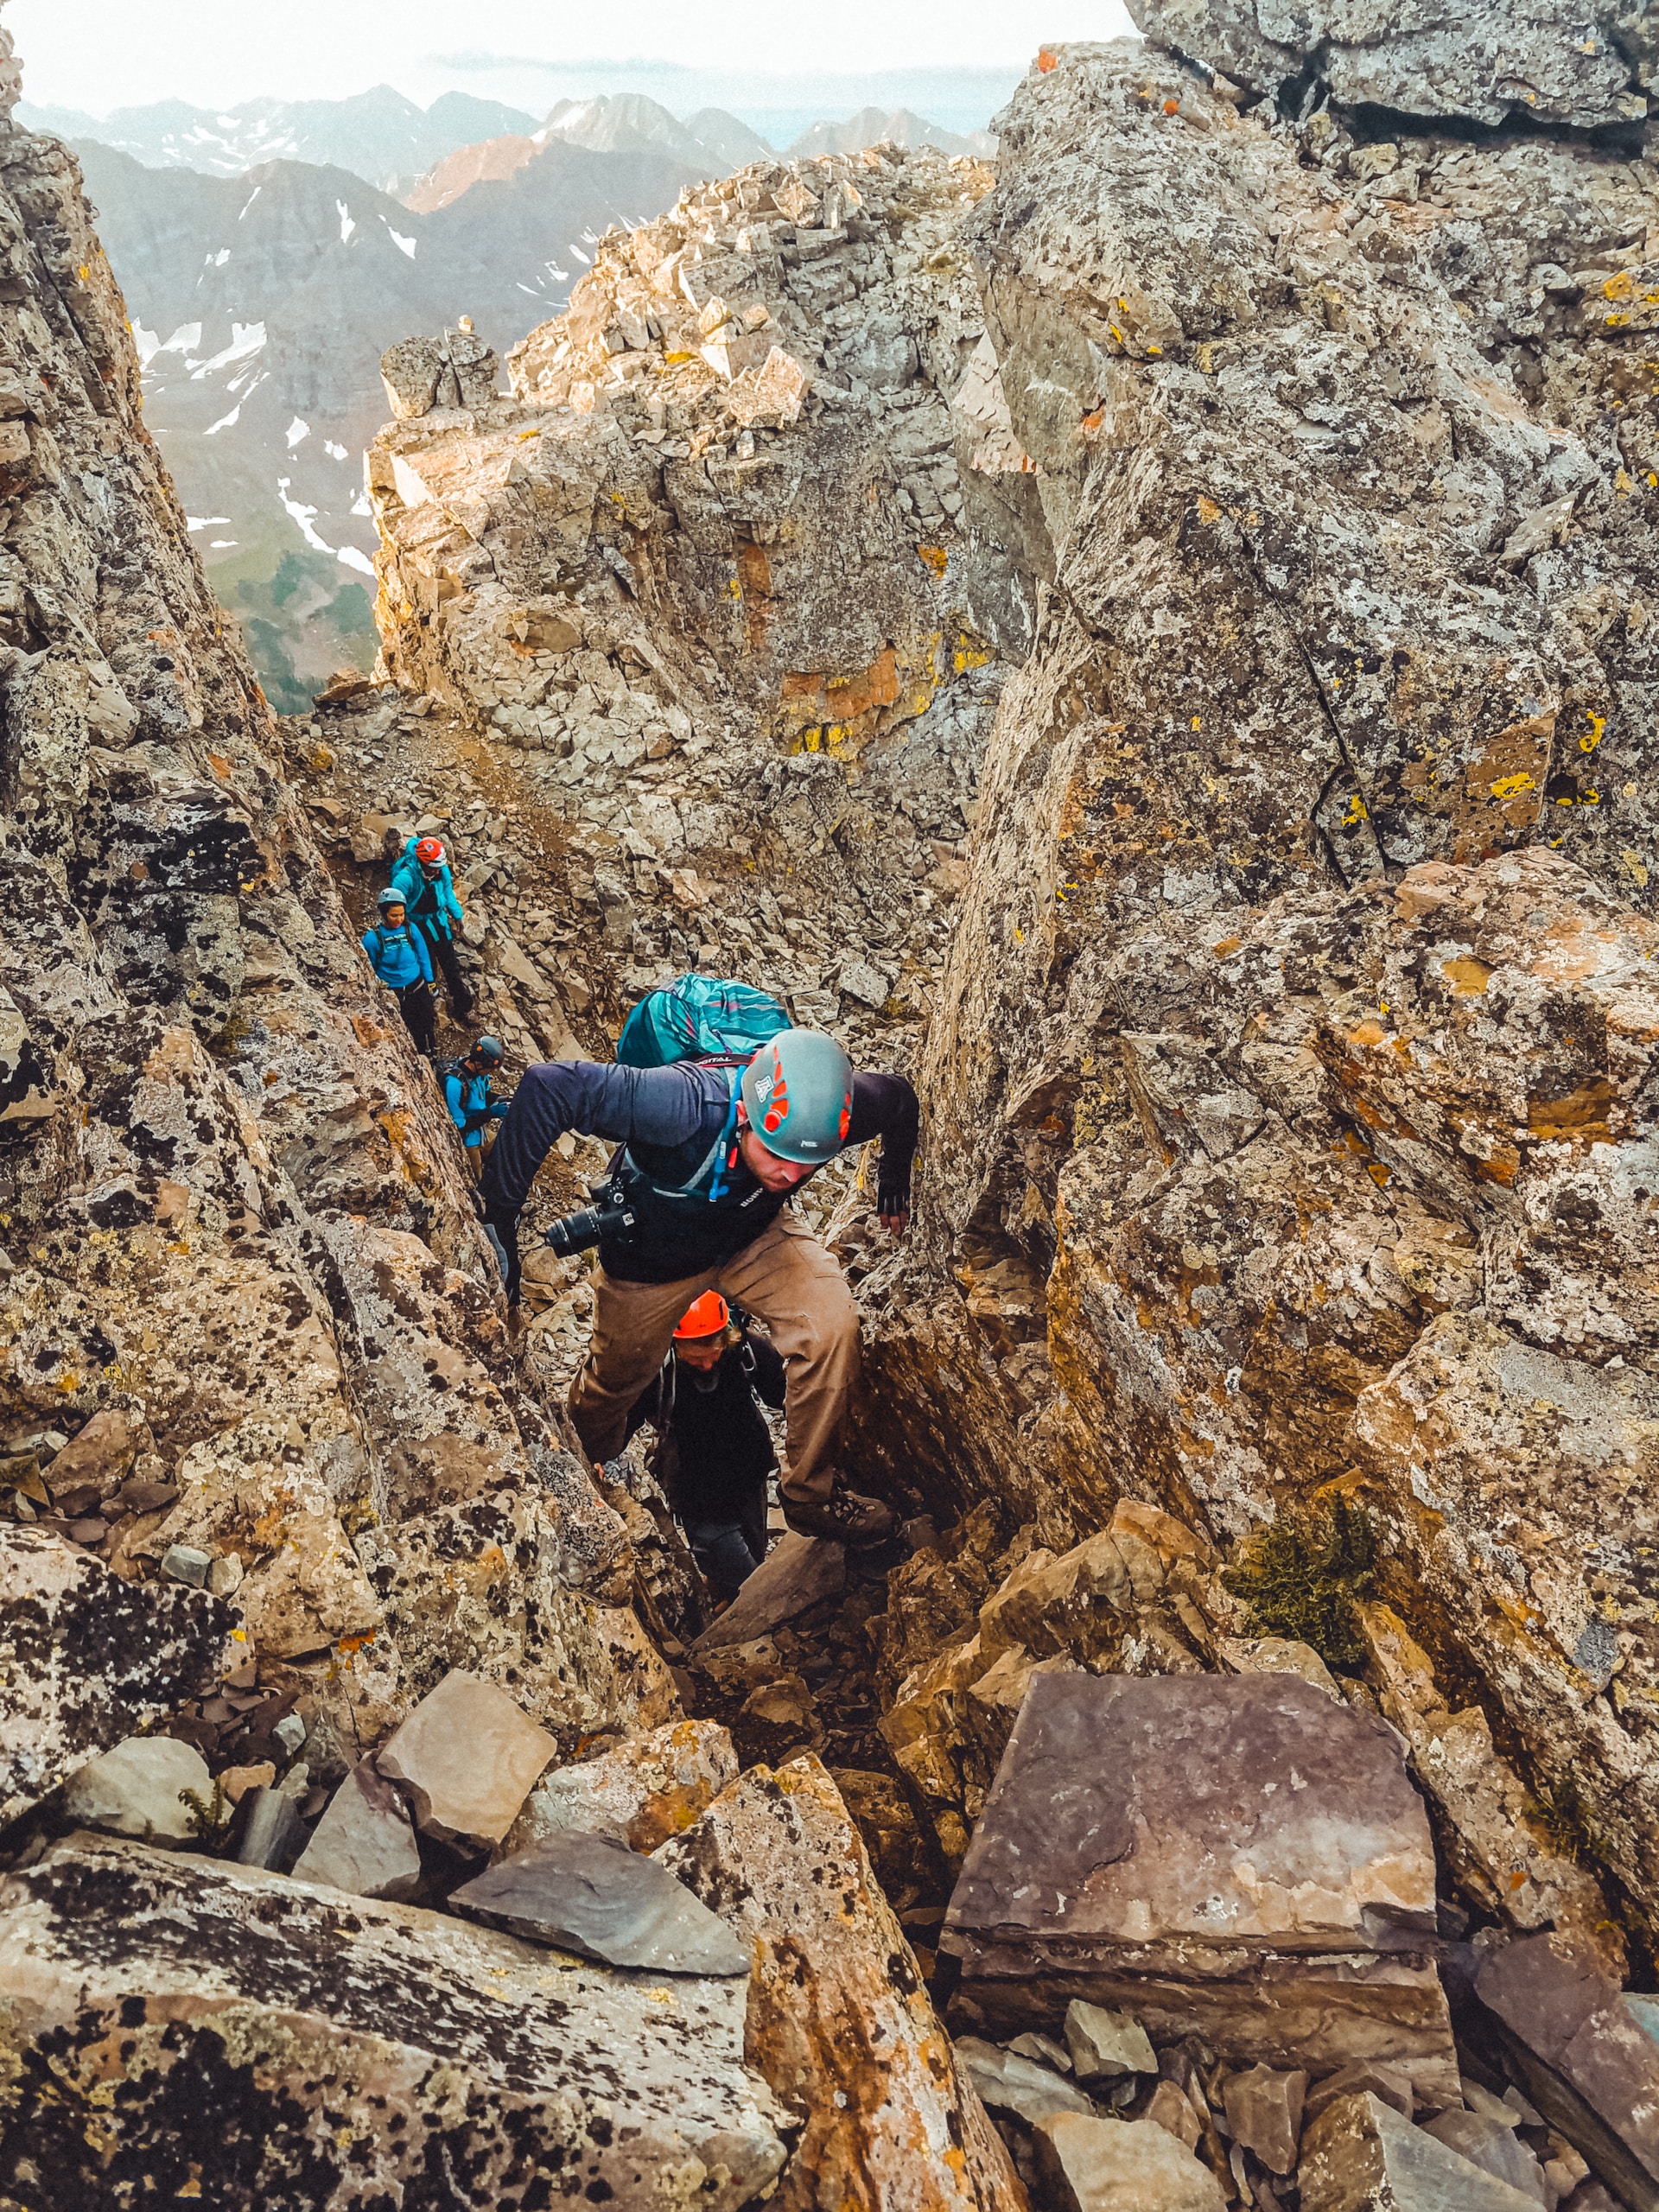 Bergsteigen kann sowohl für den Körper als auch für die Seele ein wertvolles Training sein